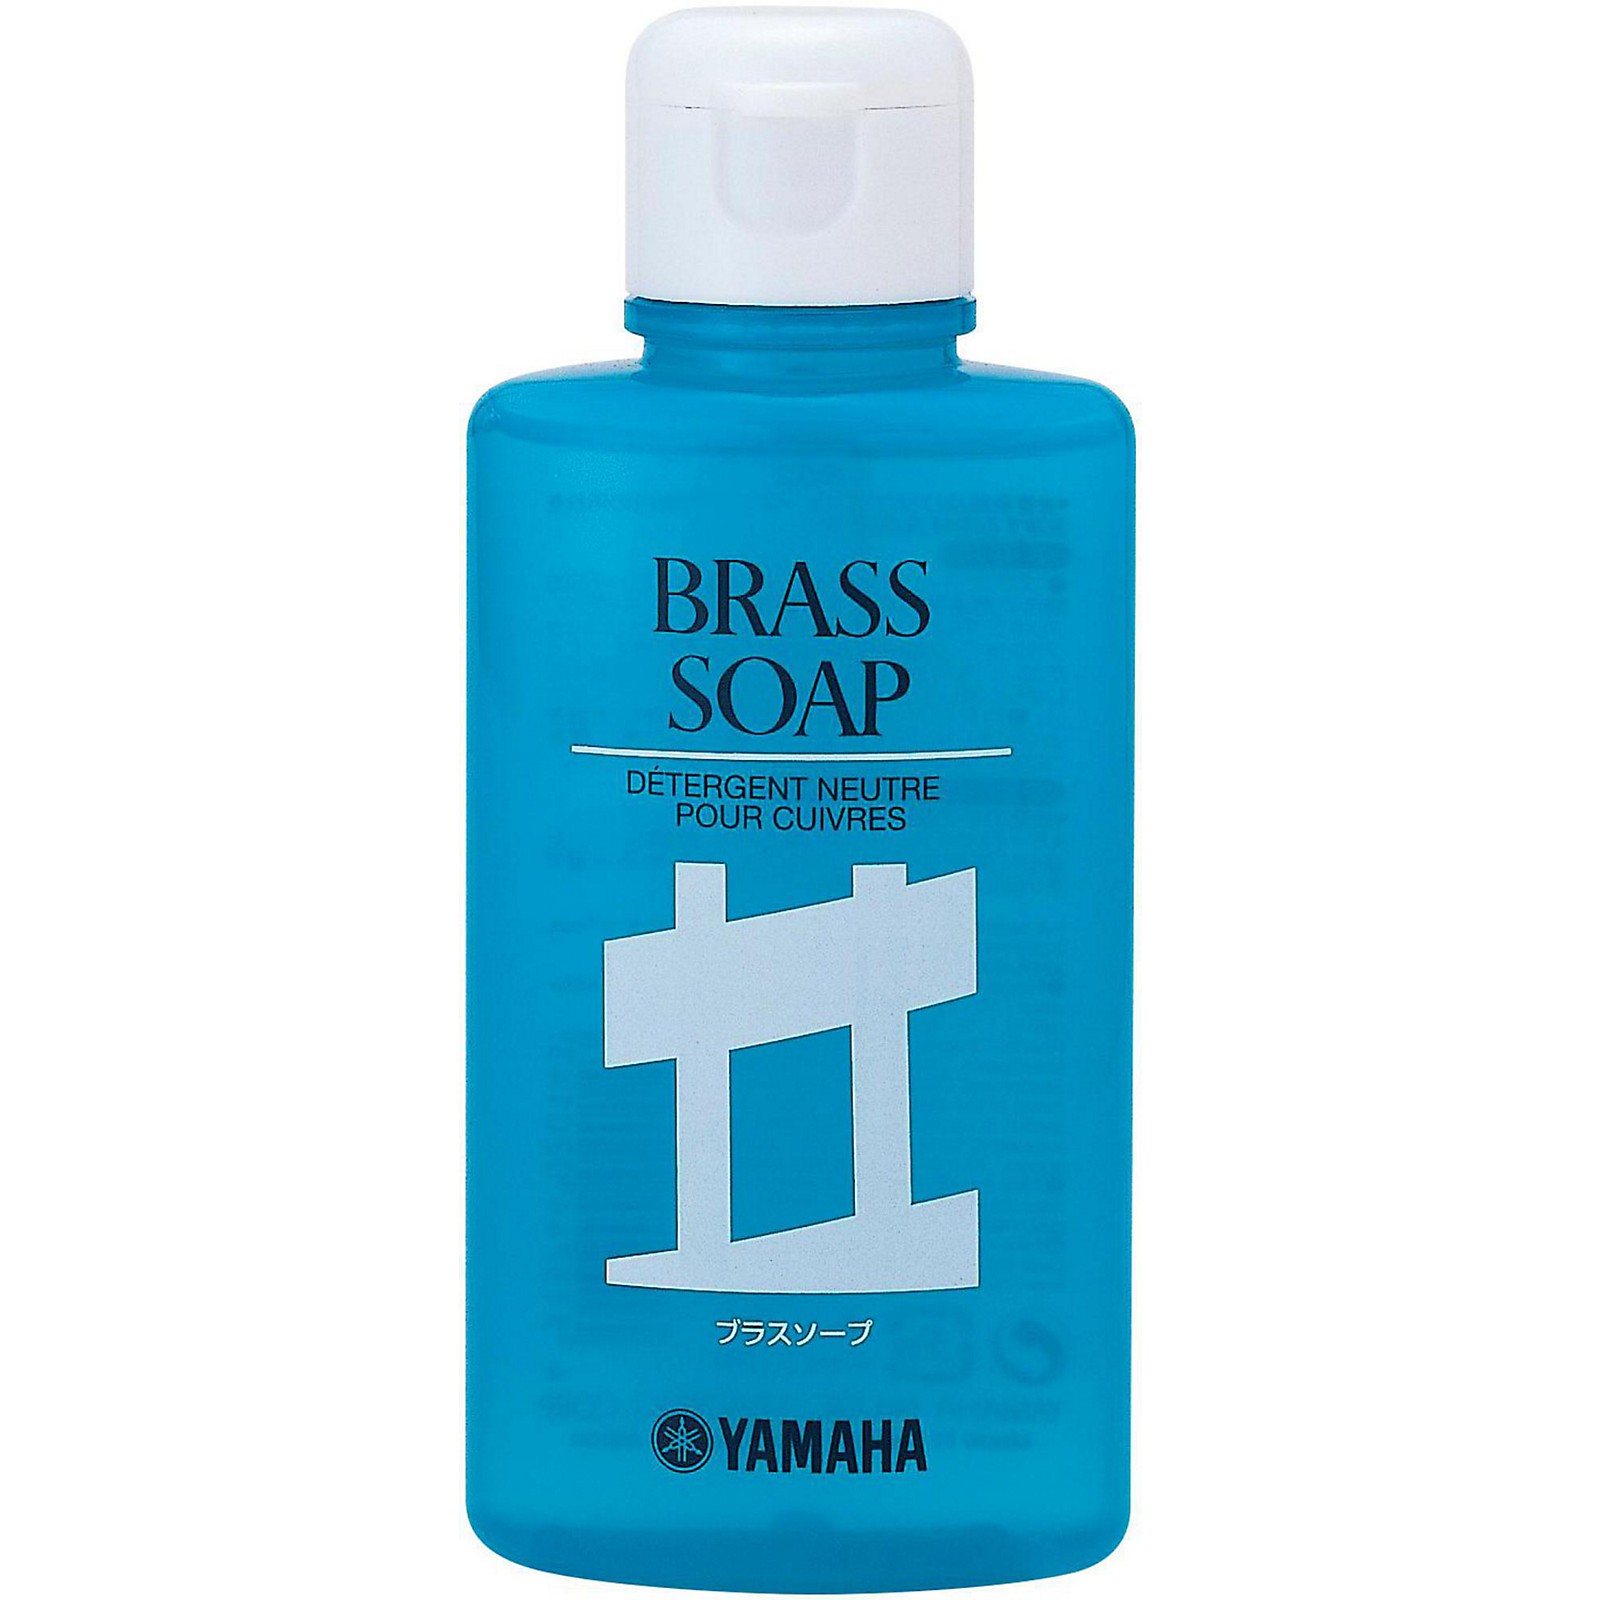 Yamaha Brass Soap 